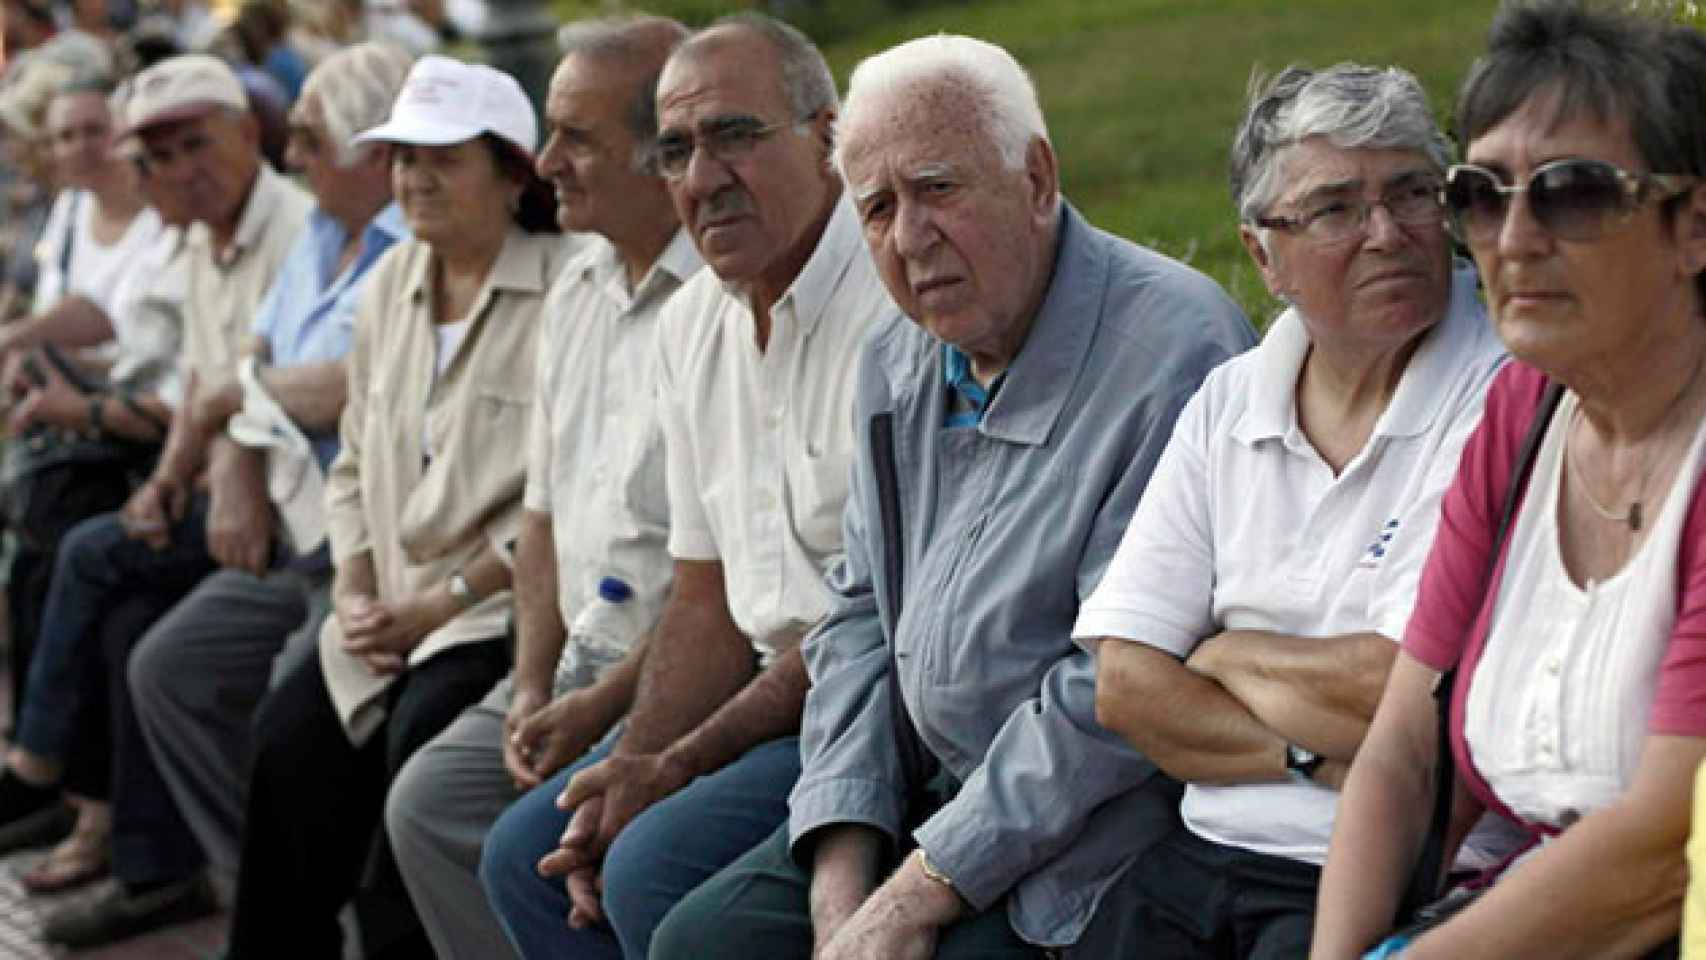 Un grupo de jubilados sentados en un parque, en una imagen de archivo / EFE